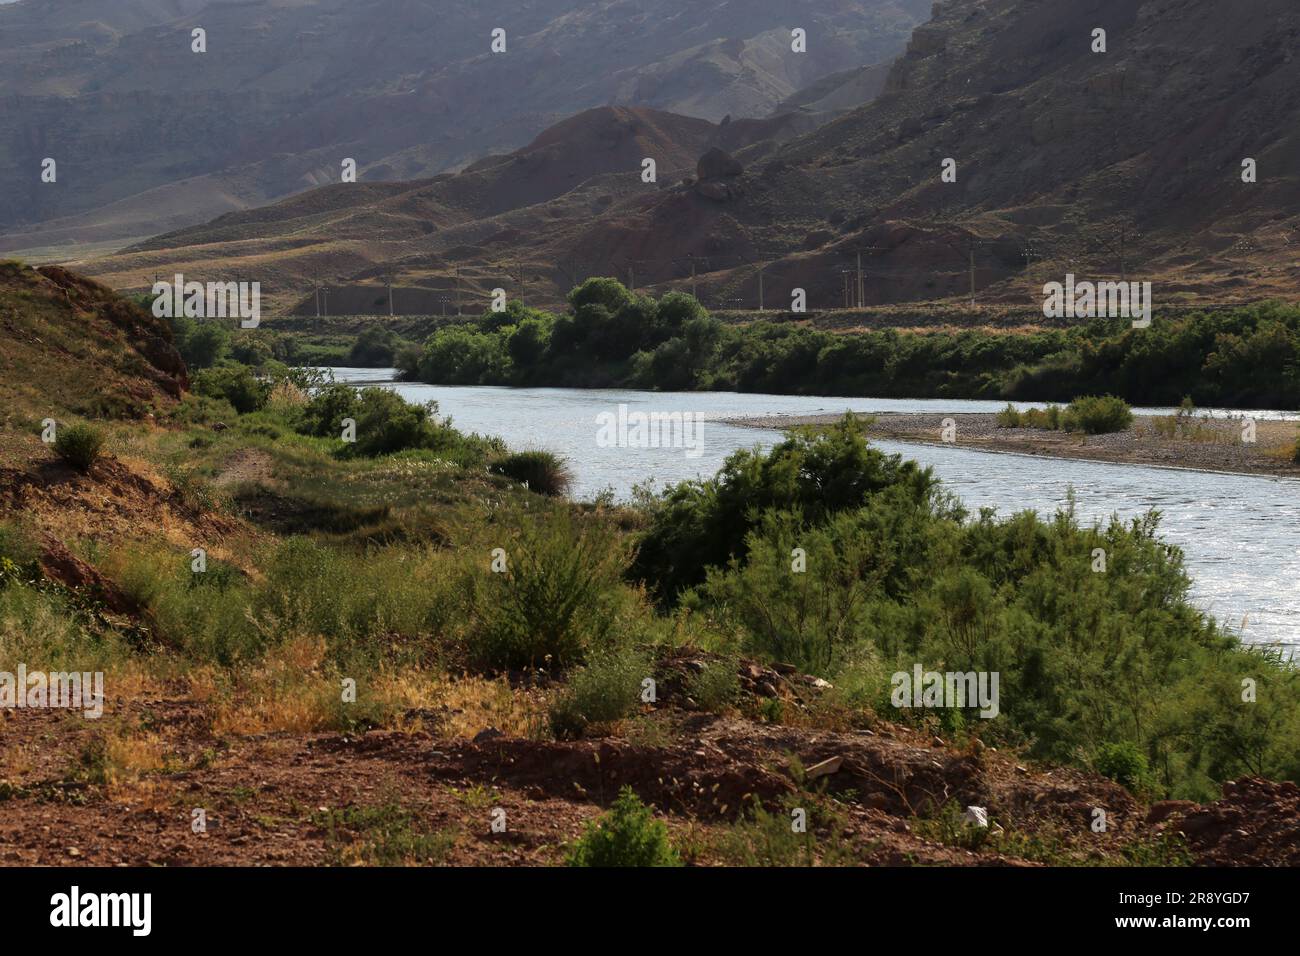 21 de junio de 2023, Jolfa, Azerbaiyán Oriental, Irán: Una vista del río Aras en la frontera entre el noroeste de Irán y Azerbaiyán. El Aras (los Araks, Arax, Araxes, o Araz) es un río en el Cáucaso. Se levanta en el este de Turquía y fluye a lo largo de las fronteras entre Turquía y Armenia, entre Turquía y el exclave de Najicheván de Azerbaiyán, entre Irán y Azerbaiyán y Armenia, y, finalmente, a través de Azerbaiyán, donde desemboca en el río Kura. Drena el lado sur de las montañas del Cáucaso Menor, mientras que el Kura drena el lado norte del Cáucaso Menor. La longitud total del río es Foto de stock